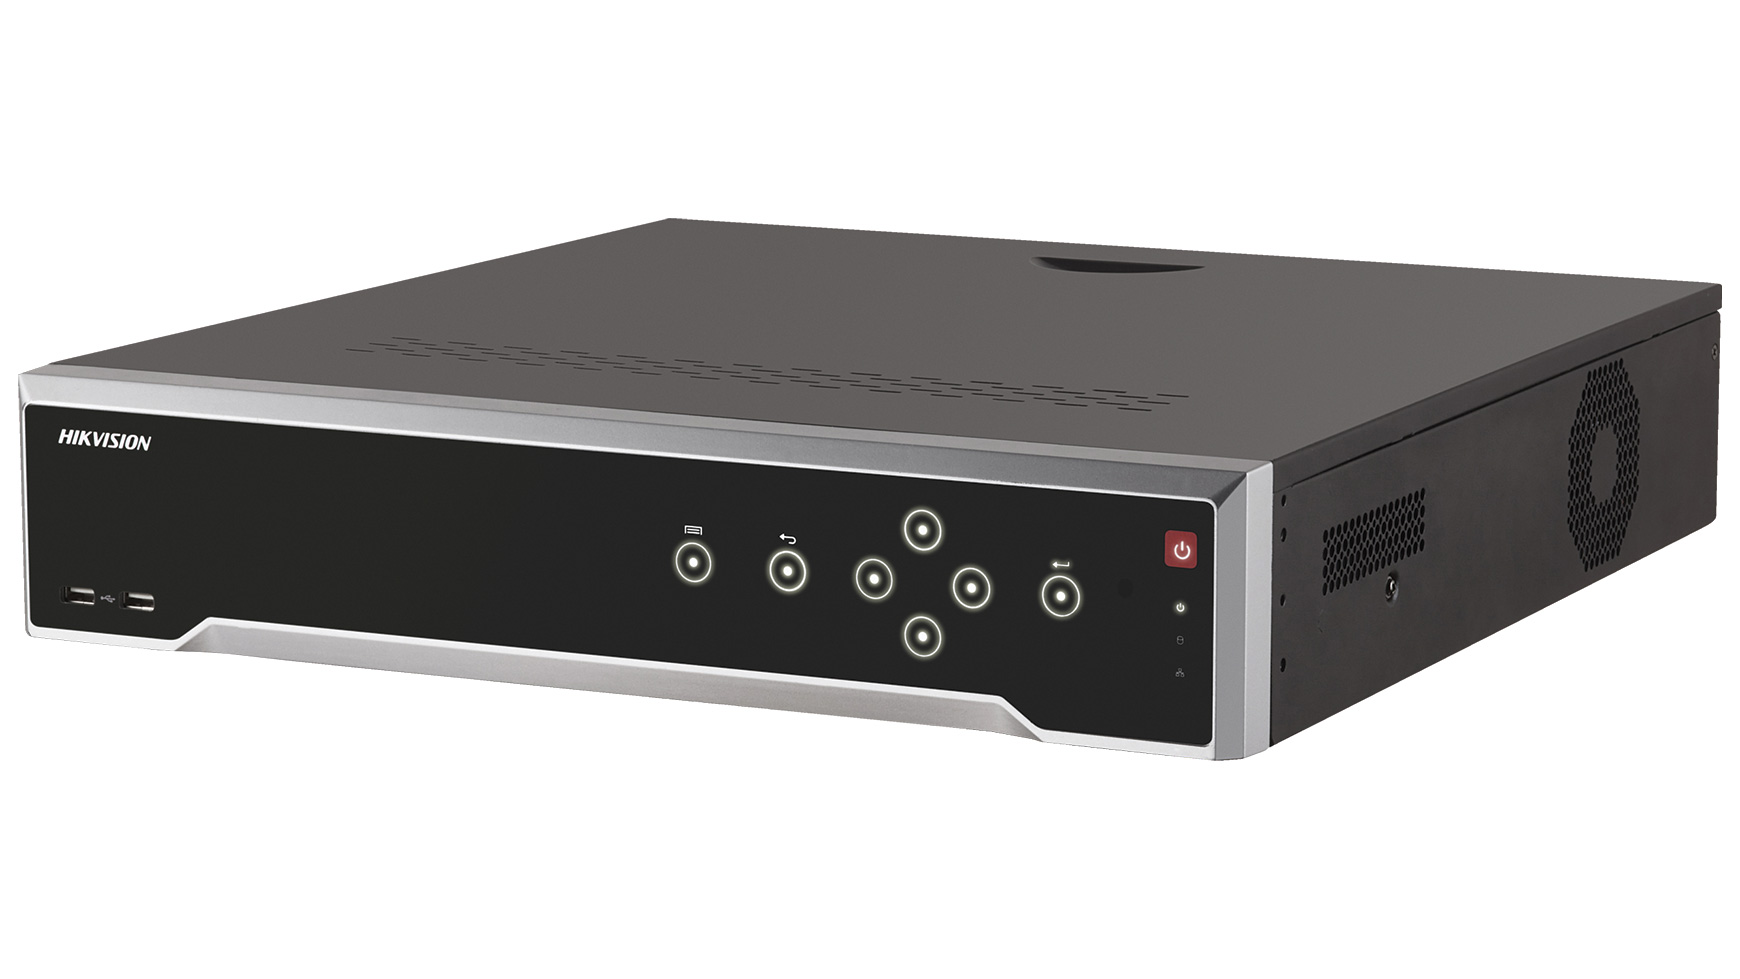 Hikvision DS-7716NI-I4/16P(B) - Mrežni video snimač za 16 kanala i 16 PoE portova.